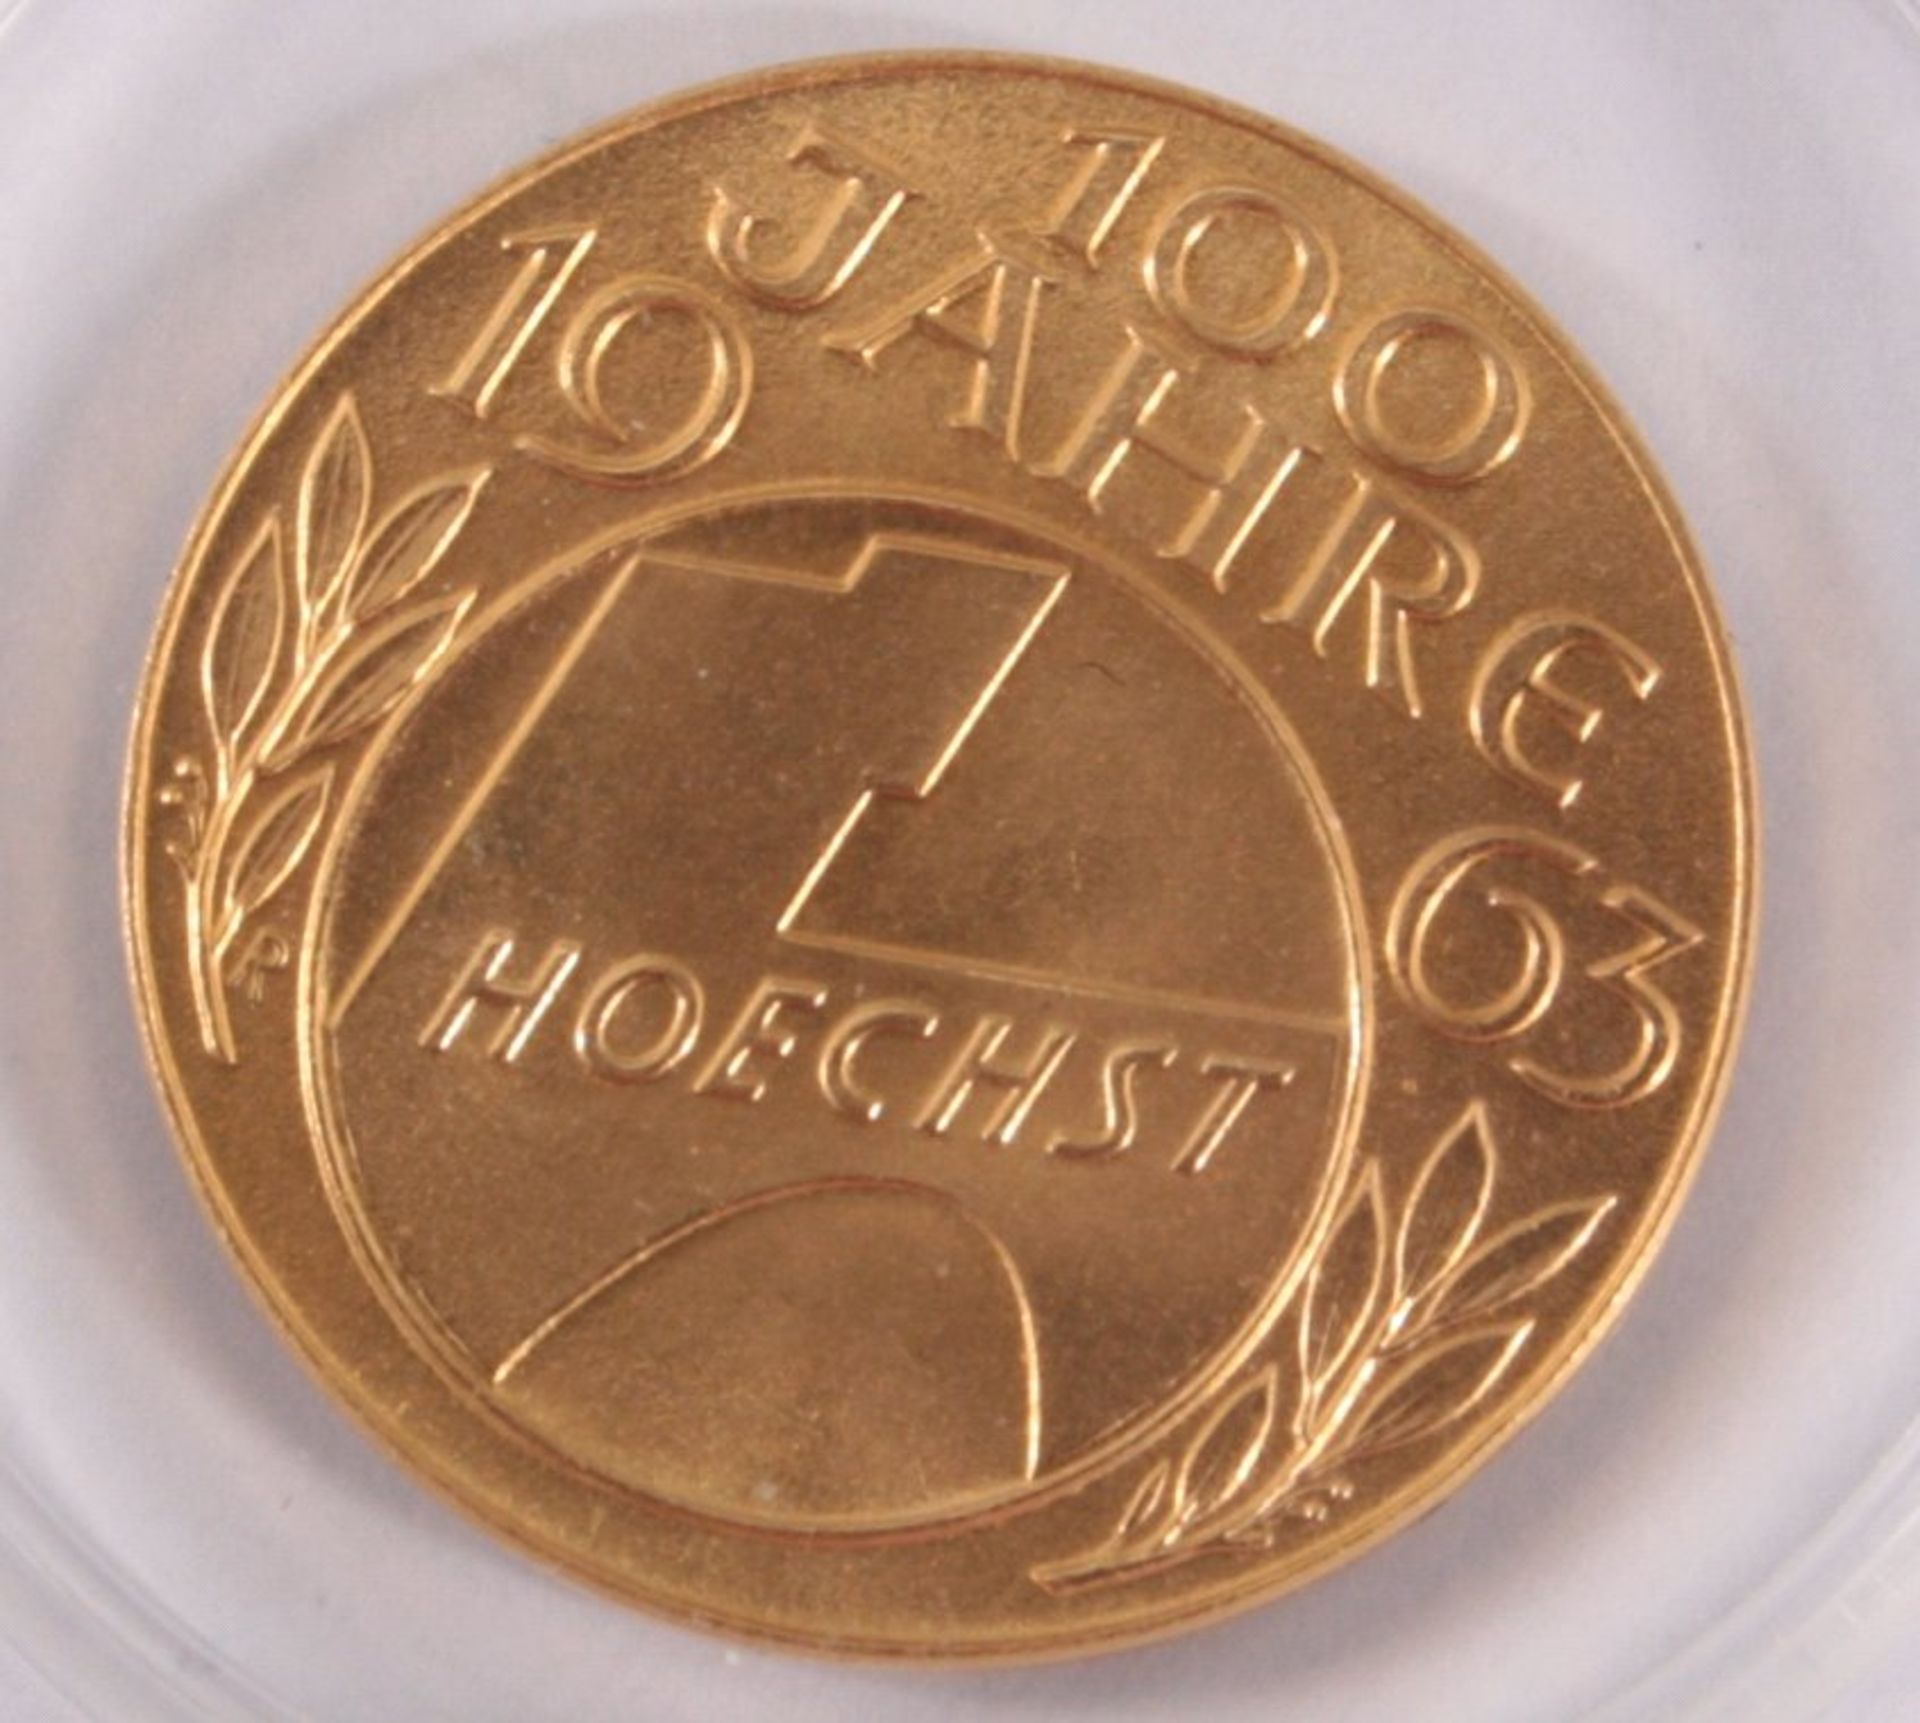 Medaille 100 Jahre HoechstD-22,5 mm, ca. 8 gMindestpreis: 200 EUR